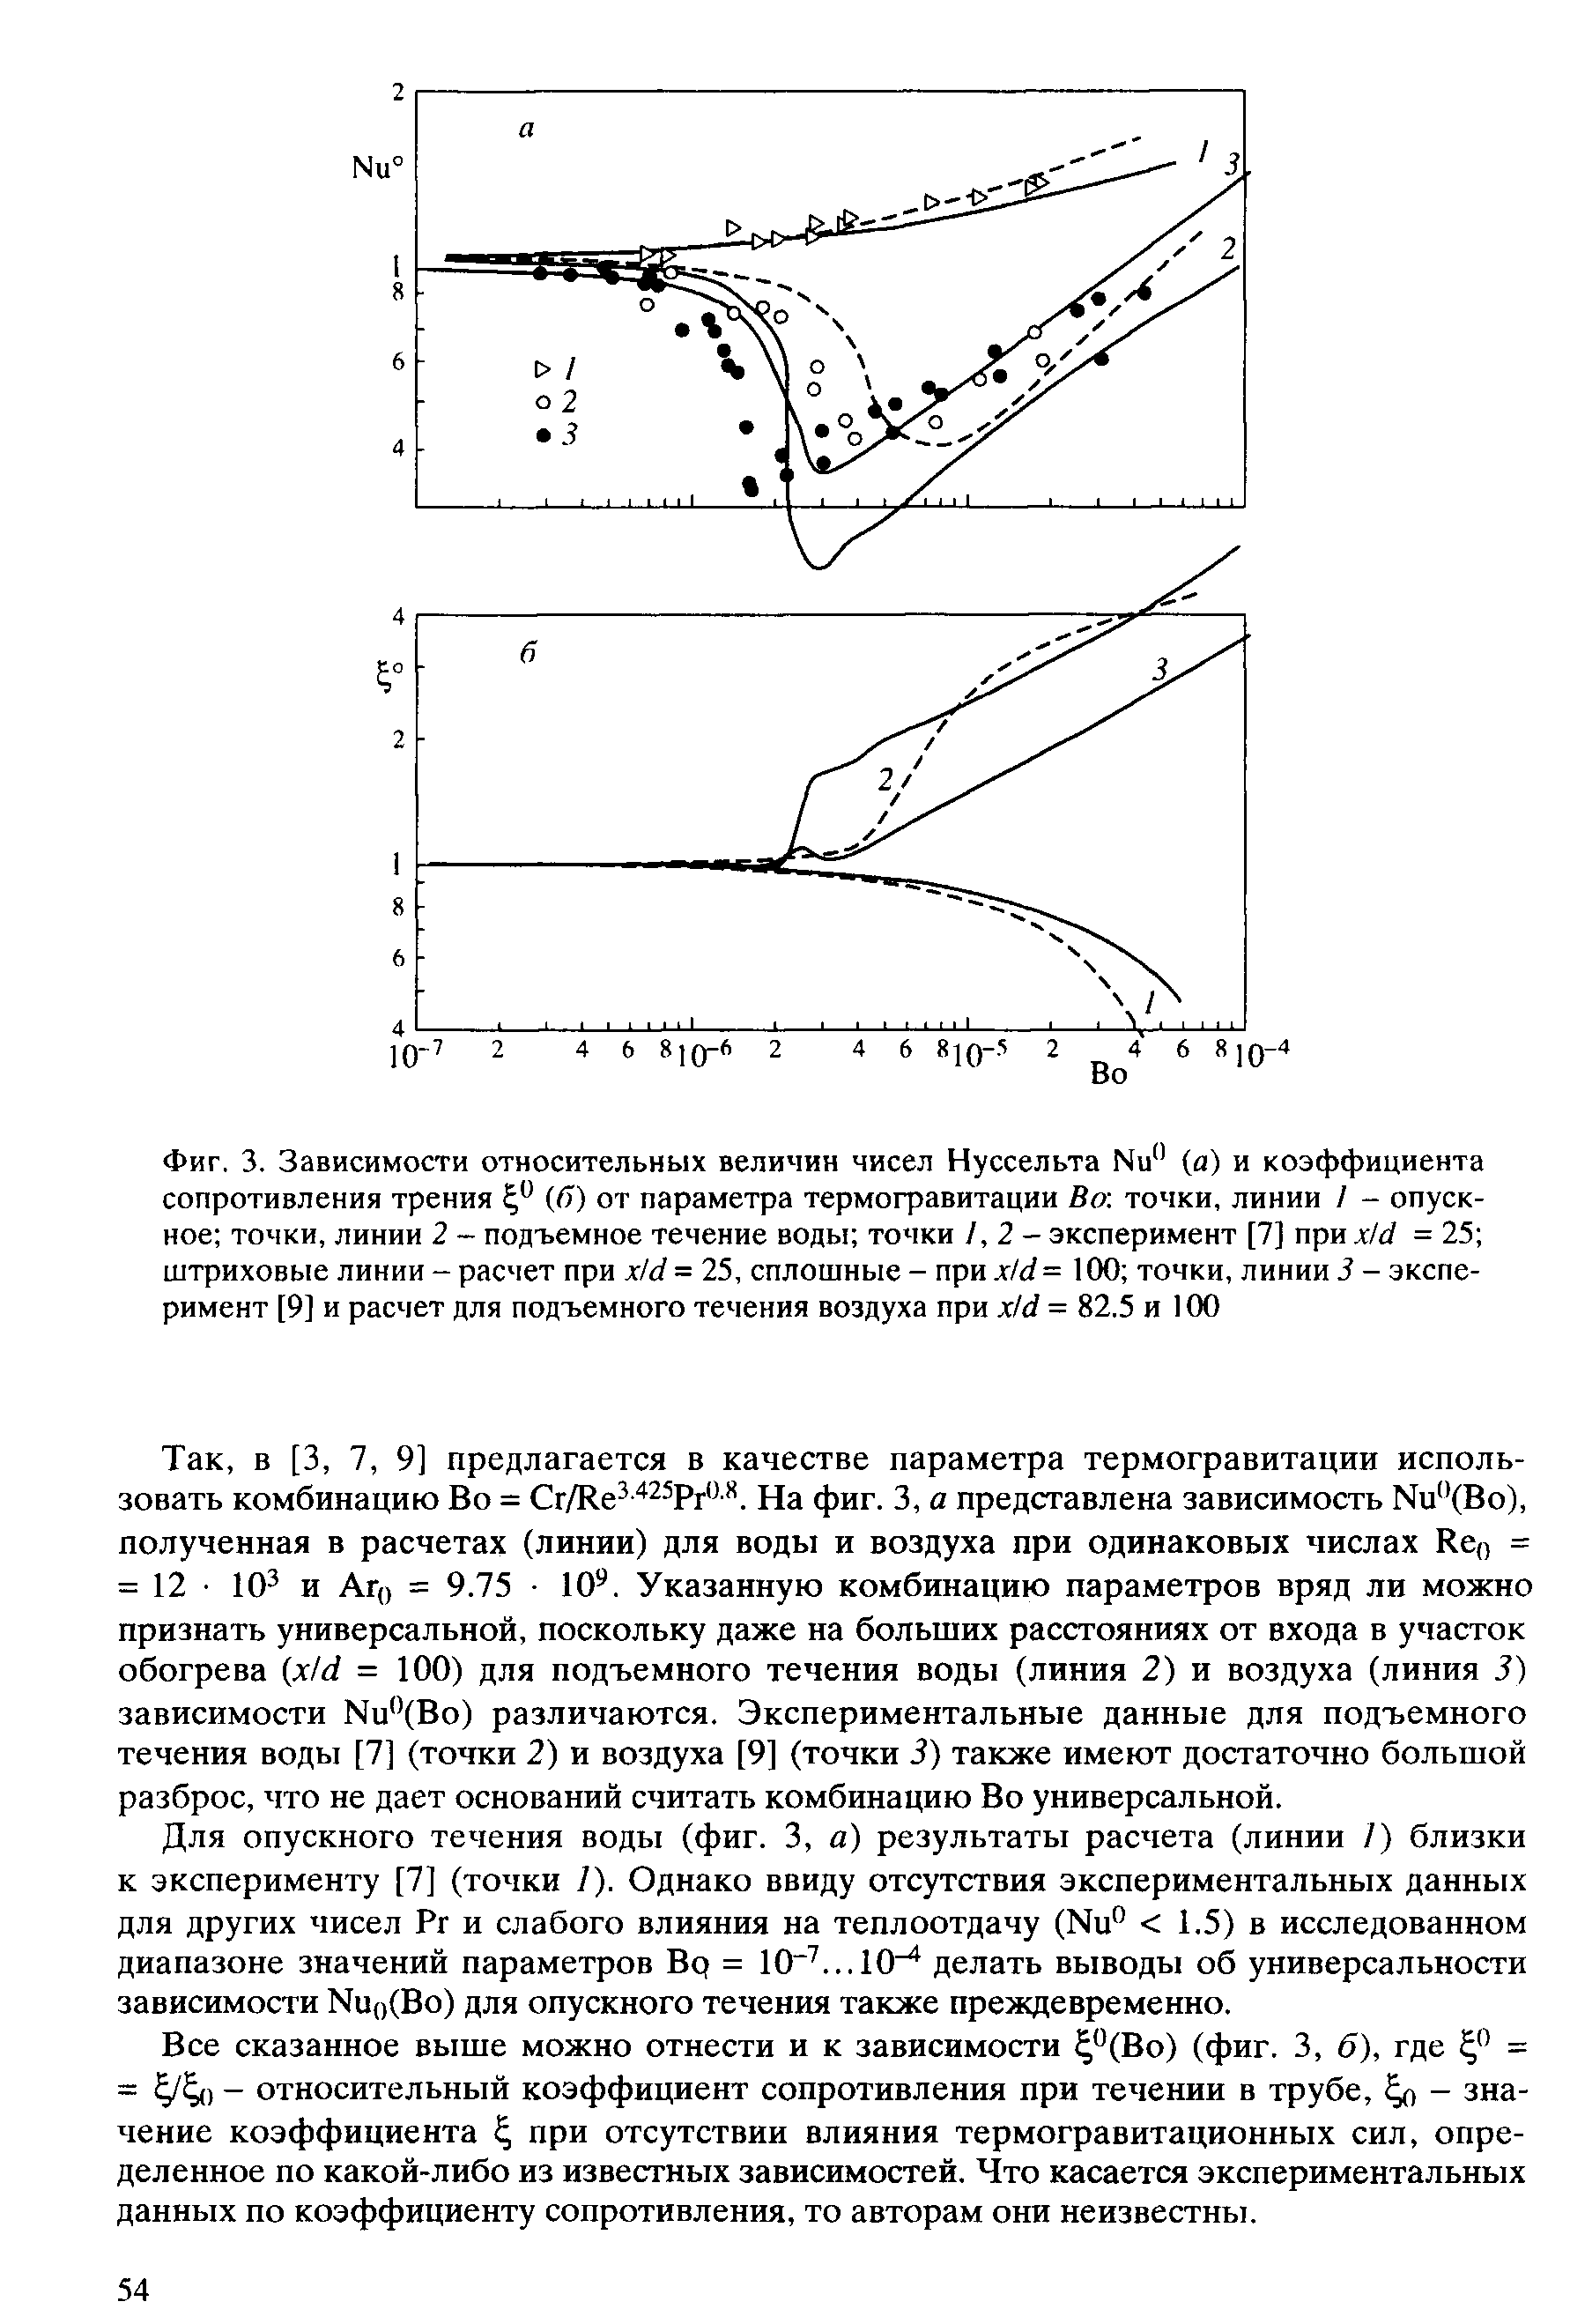 Фиг. 3. Зависимости <a href="/info/293495">относительных величин</a> чисел Нуссельта Nu" (а) и <a href="/info/31272">коэффициента сопротивления трения</a> (б) от параметра термогравитации Ва точки, линии / - опускное точки, линии 2 - подъемное течение воды точки 1,2- эксперимент [7] при x/d = 25 <a href="/info/1024">штриховые линии</a> - расчет при x/d = 25, сплошные - при xtd = 100 точки, линии 3 - эксперимент [9] и расчет для подъемного течения воздуха при x/d = 82.5 и 100
